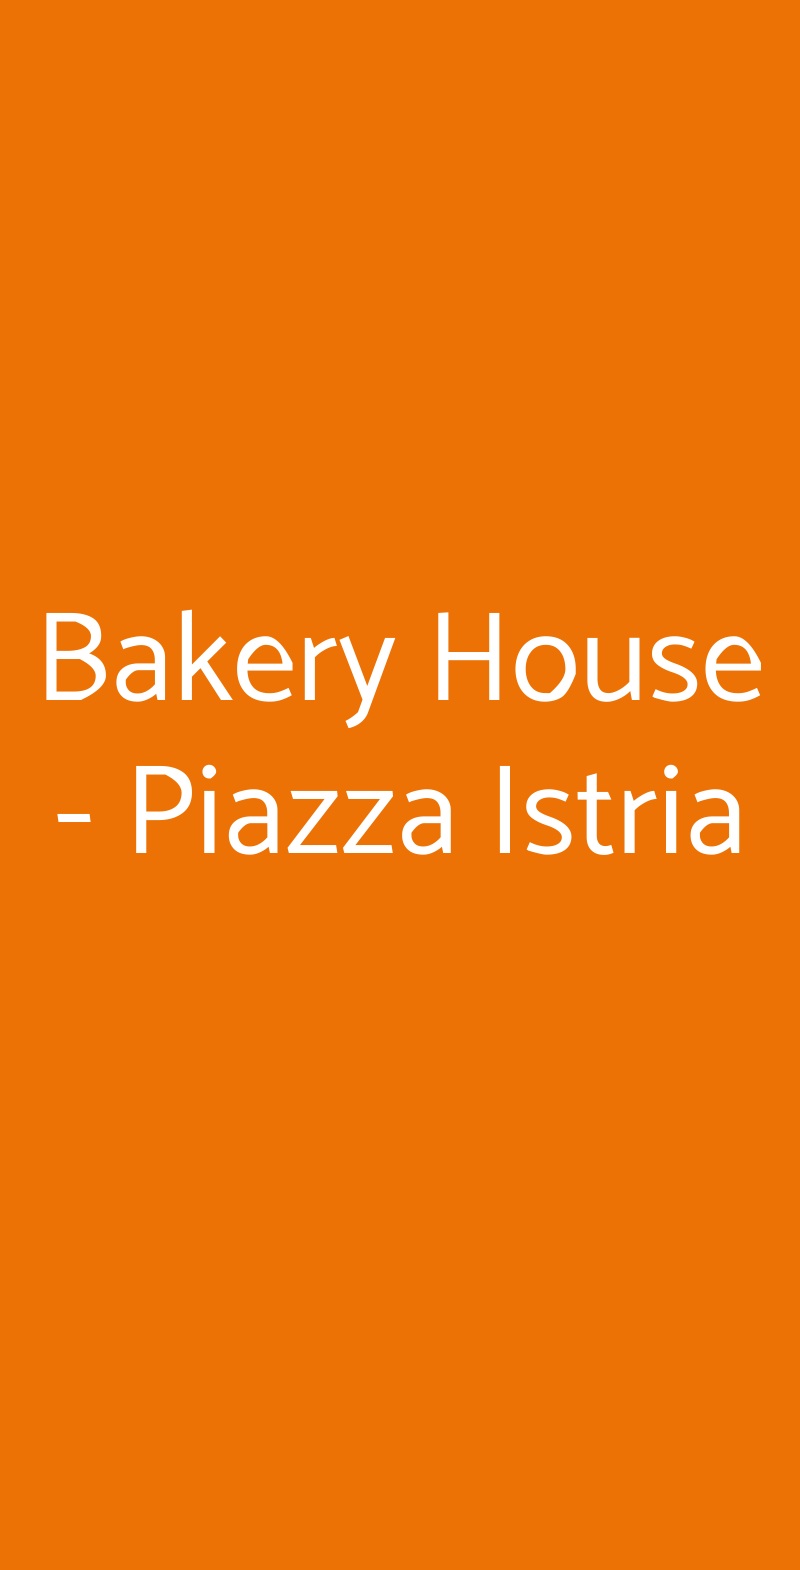 Bakery House - Piazza Istria Roma menù 1 pagina